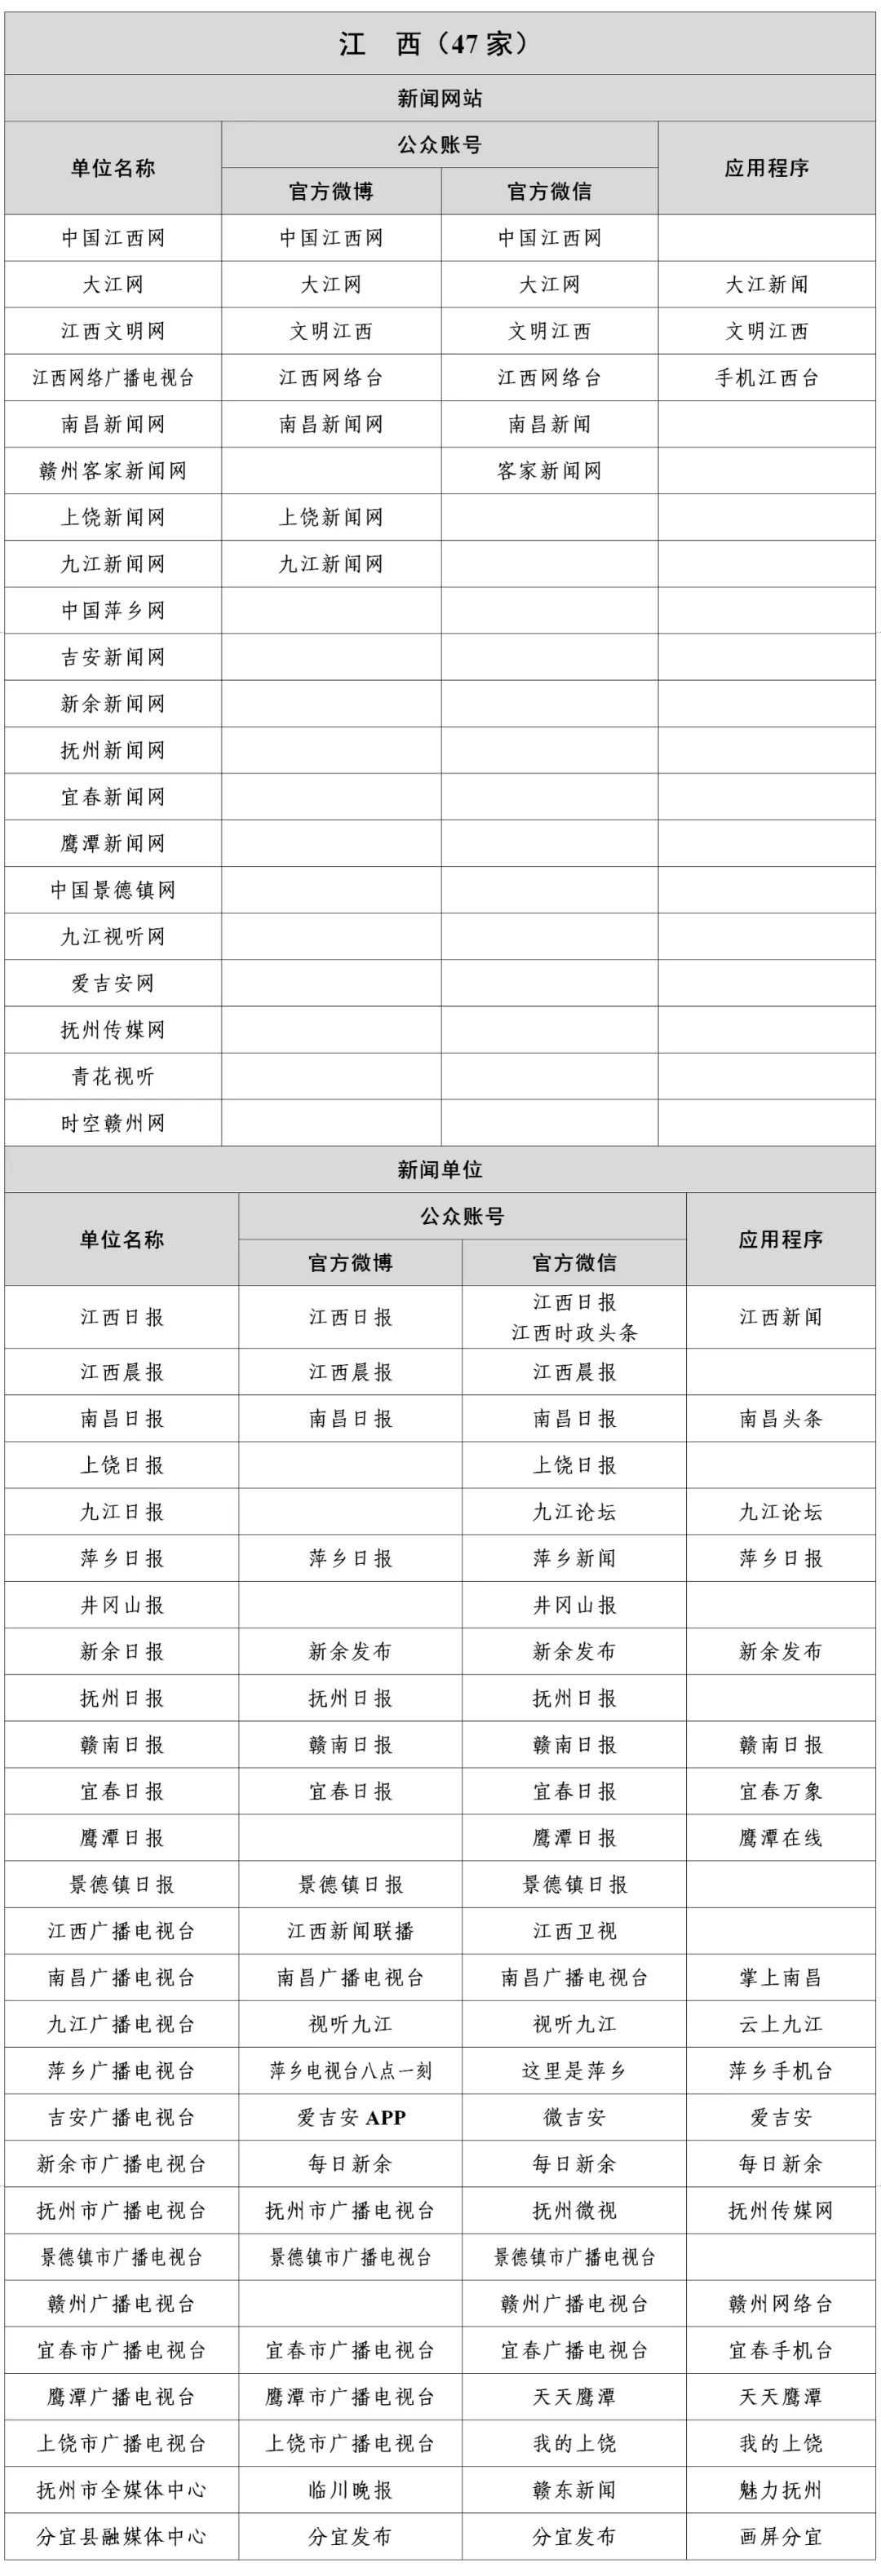 江西新闻信息稿源单位名单